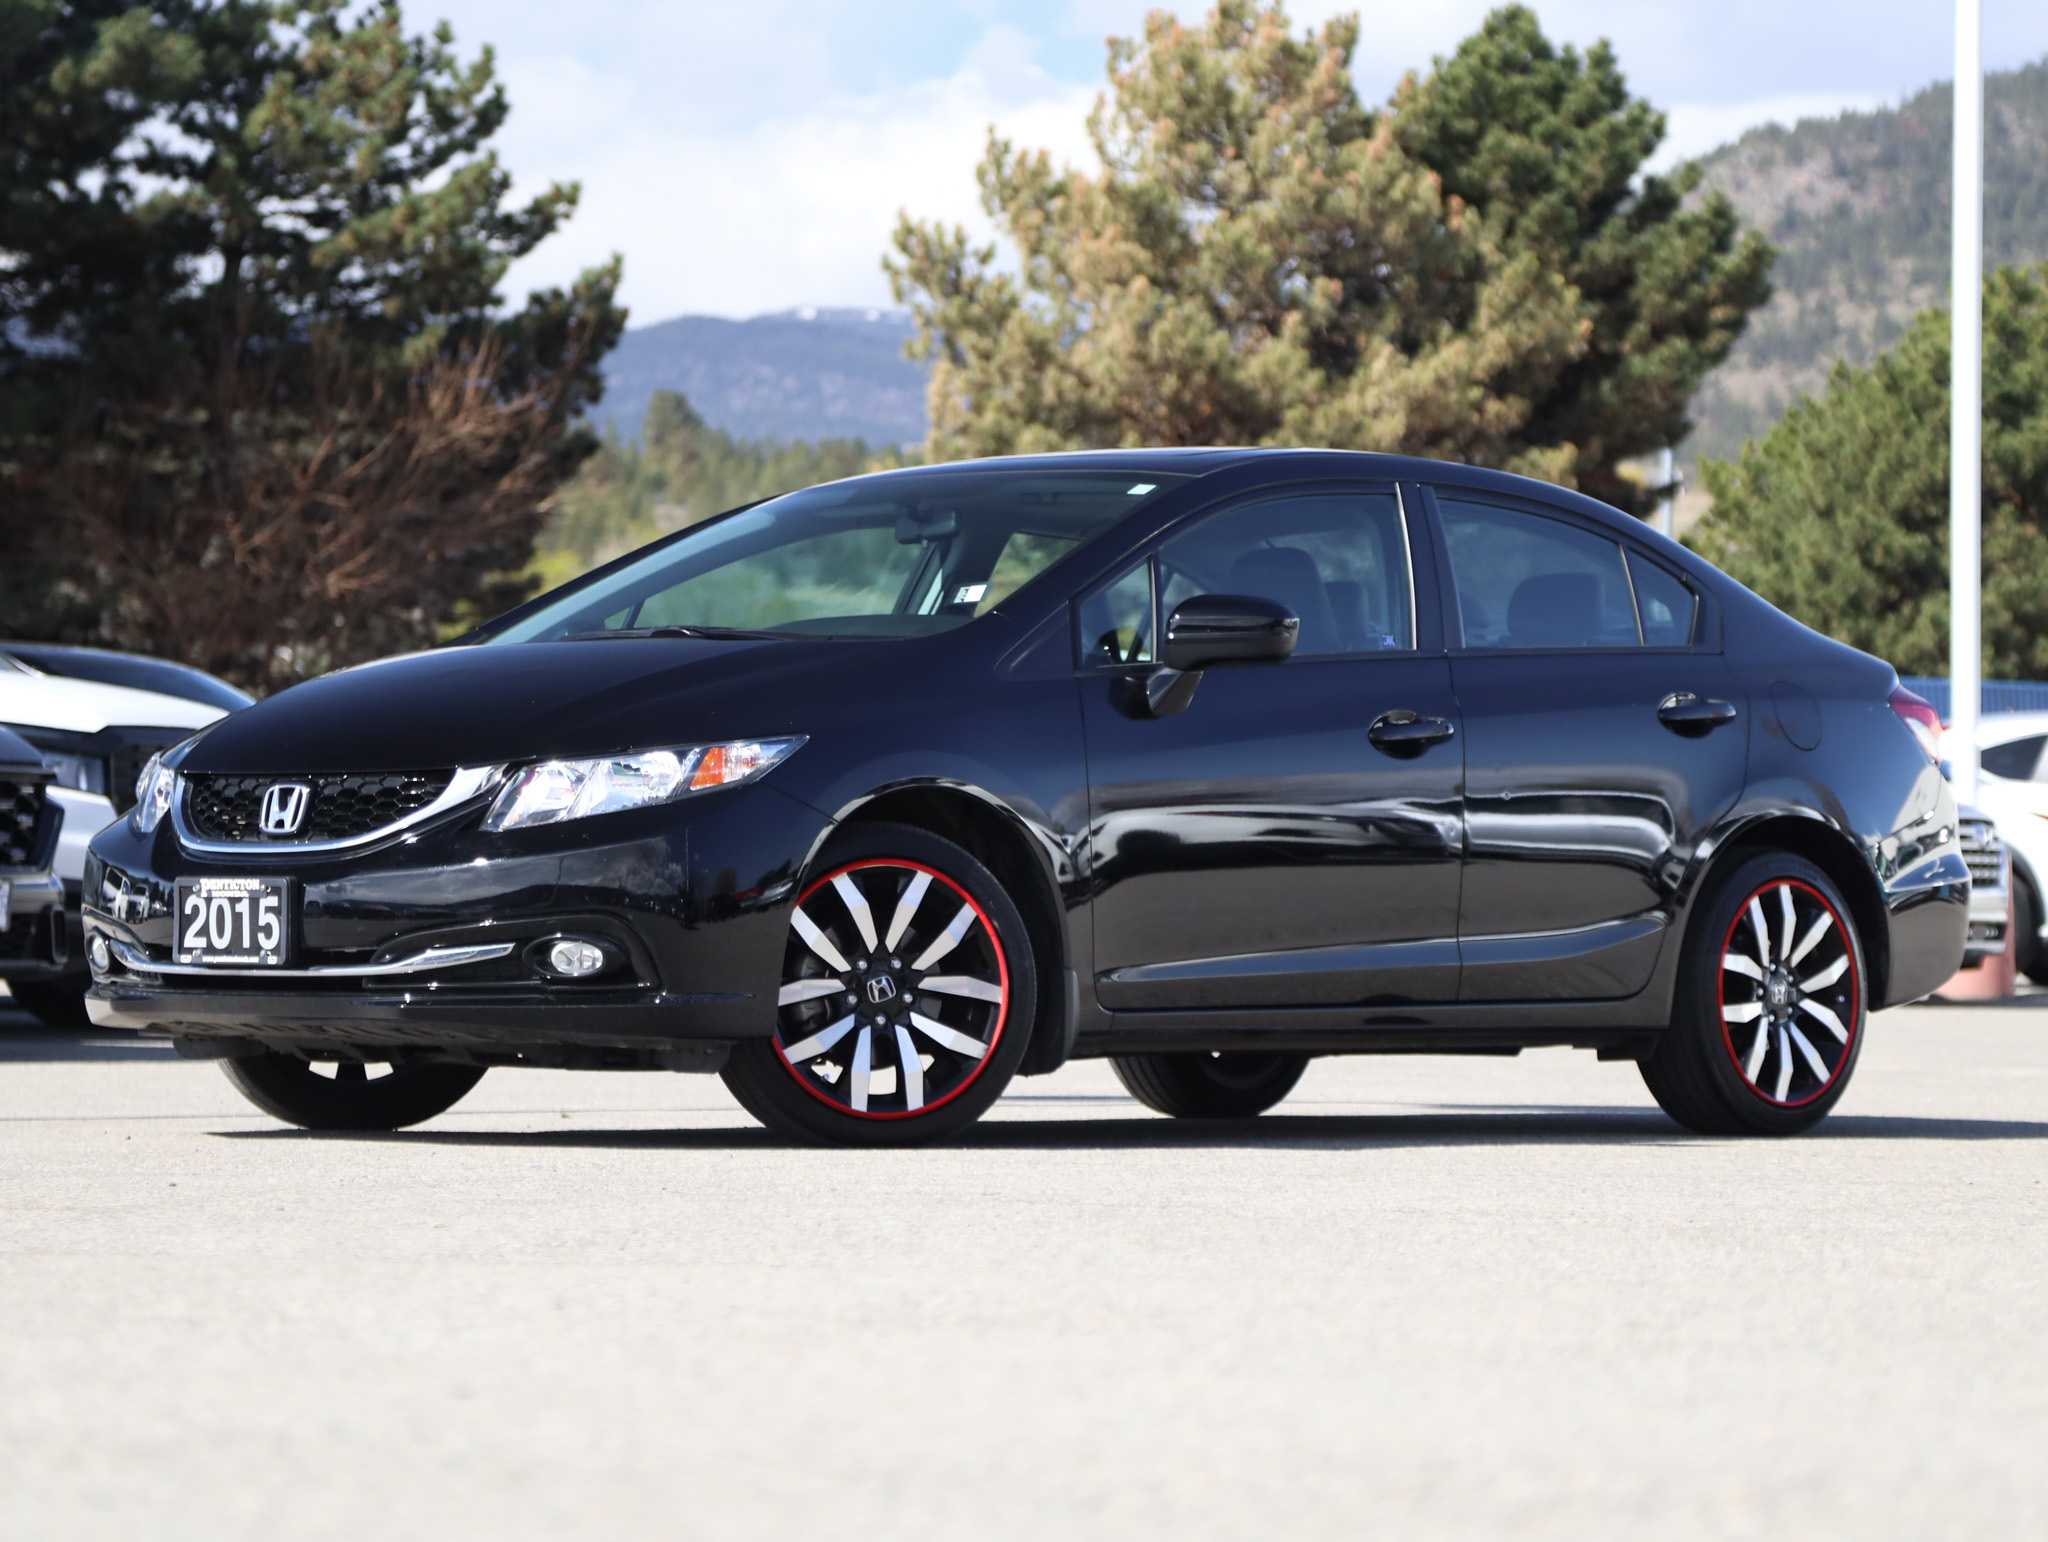 2015 Honda Civic Sedan Touring - BC Vehicle / Backup Camera / FWD